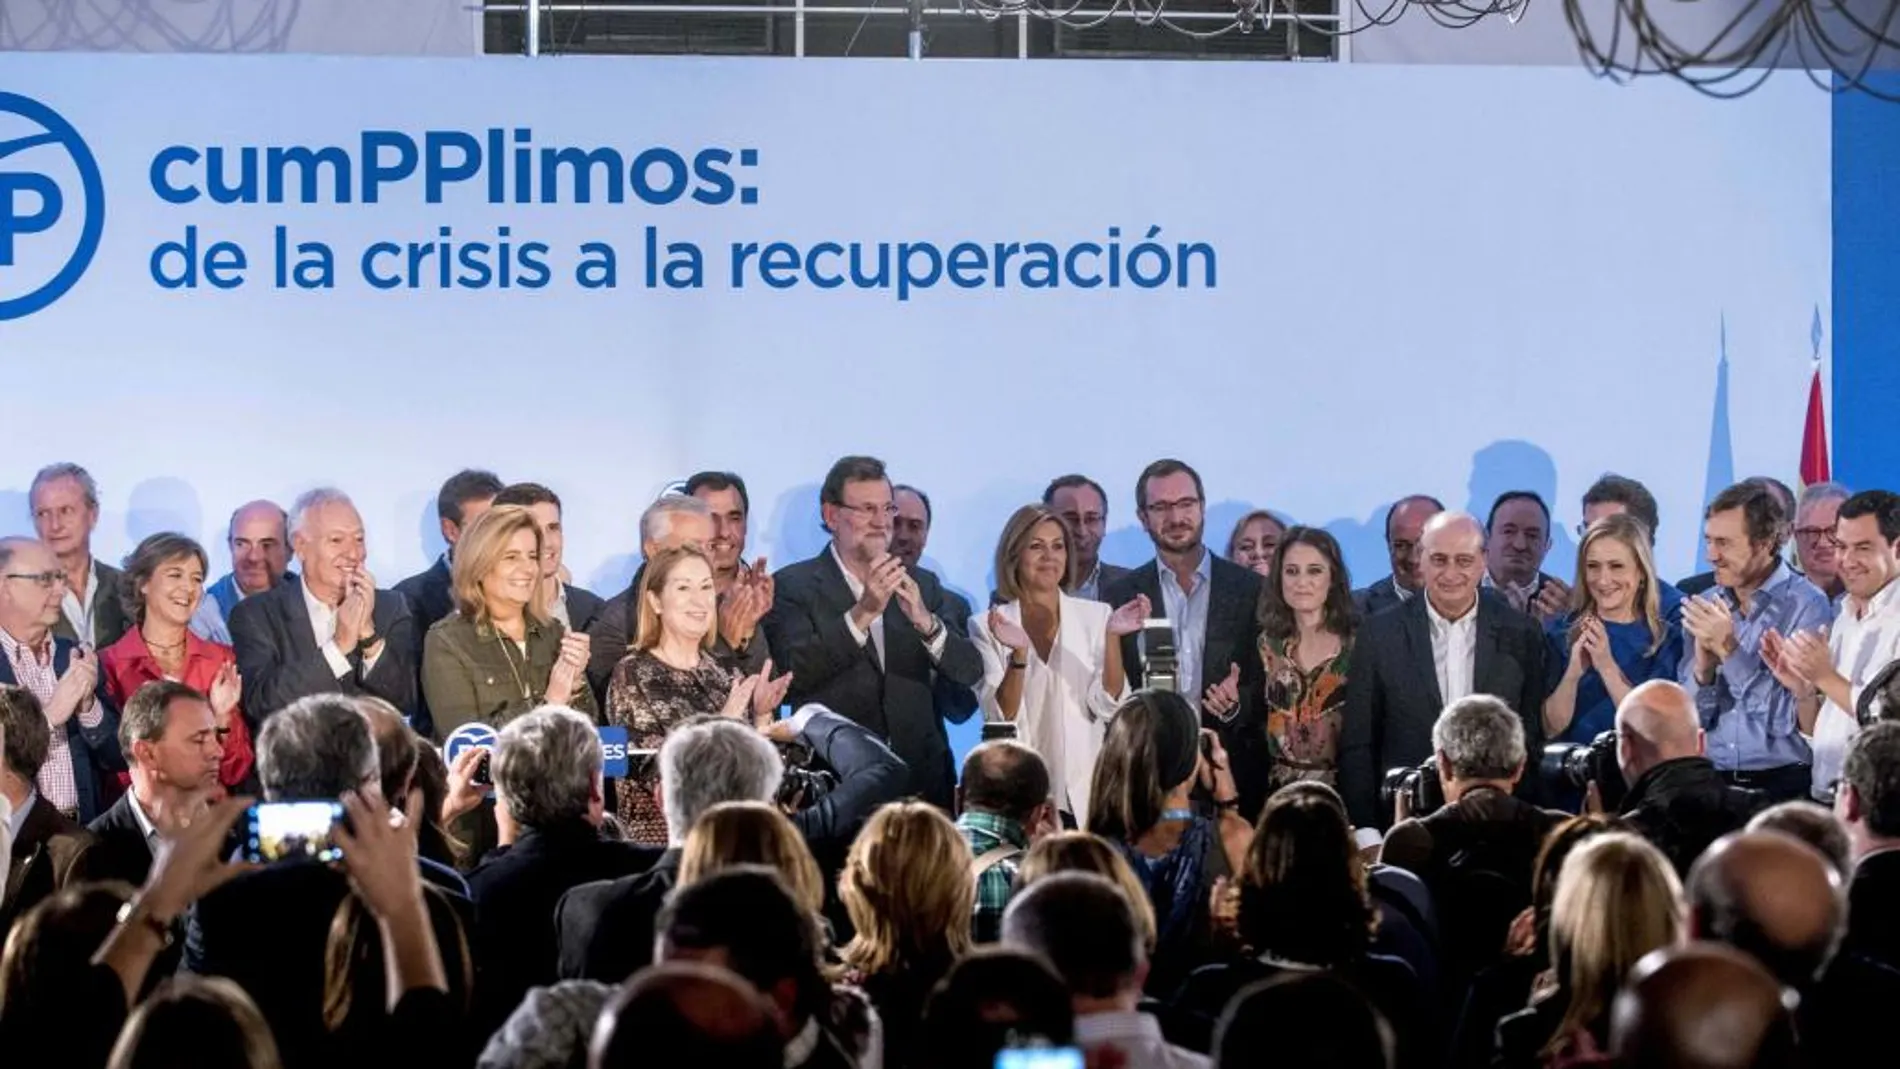 Plana mayor. El presidente Mariano Rajoy se reunió ayer en Toledo con la cúpula del Partido Popular y los barones territoriales para hacer balance tras cuatro años enLa Moncloa